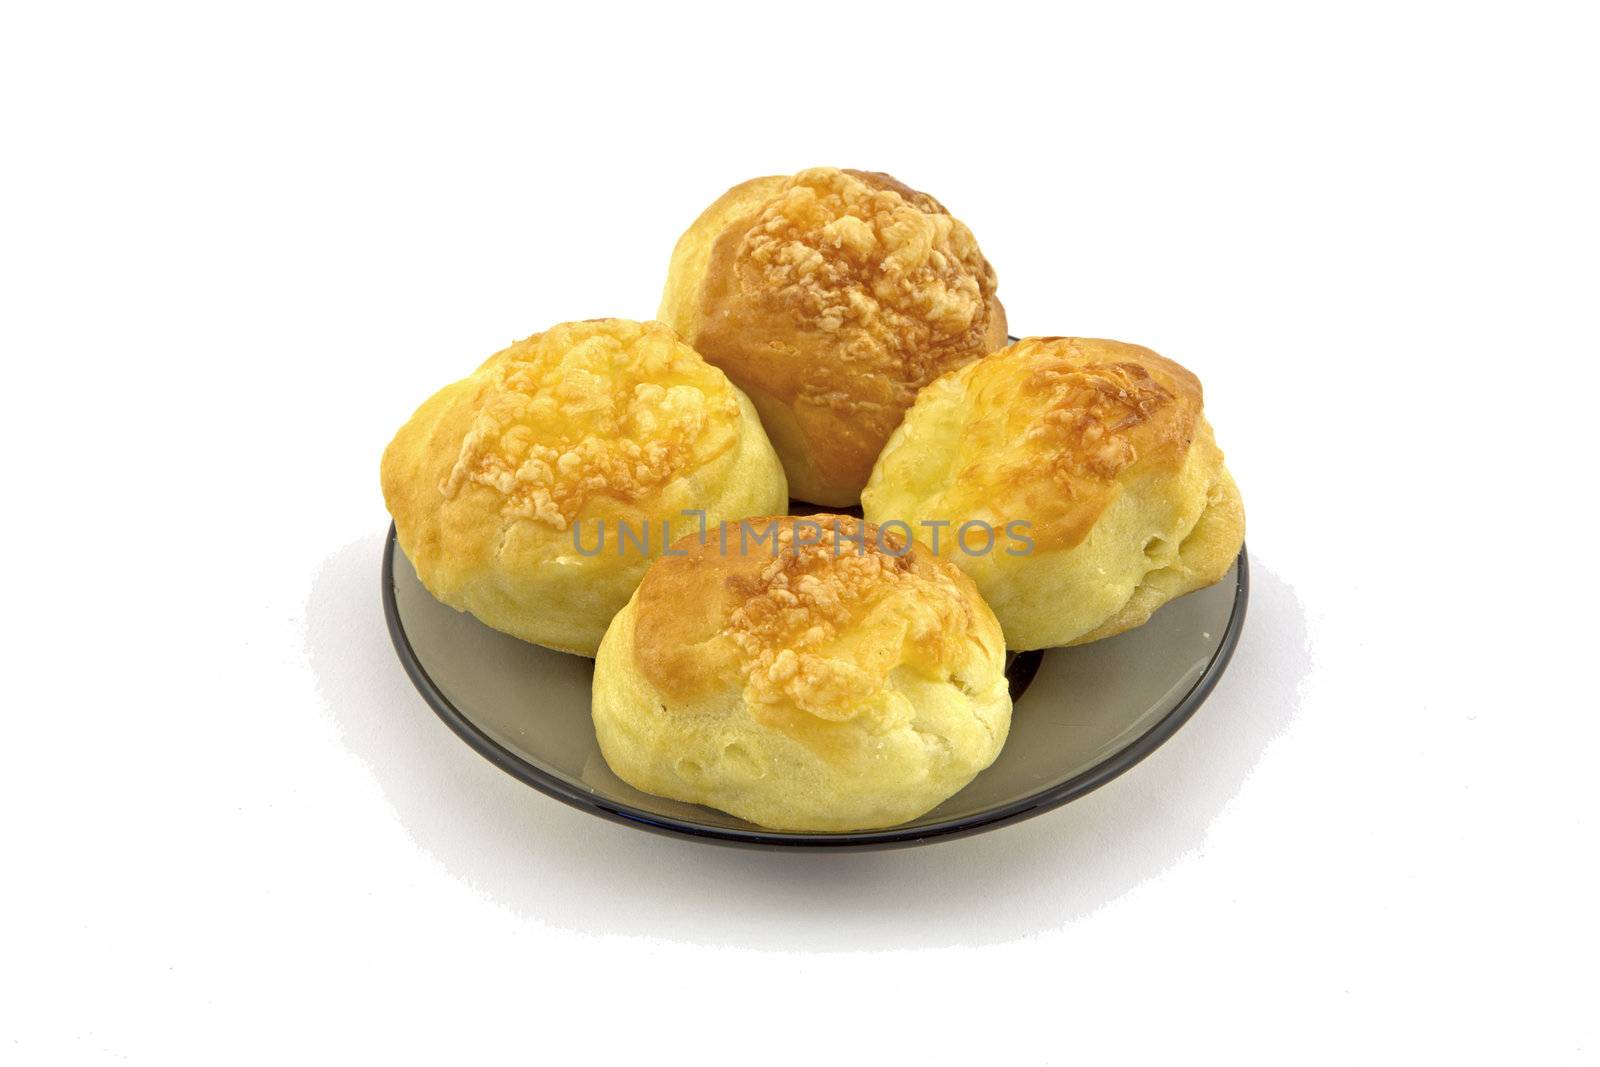 Cheese scones by renegadewanderer